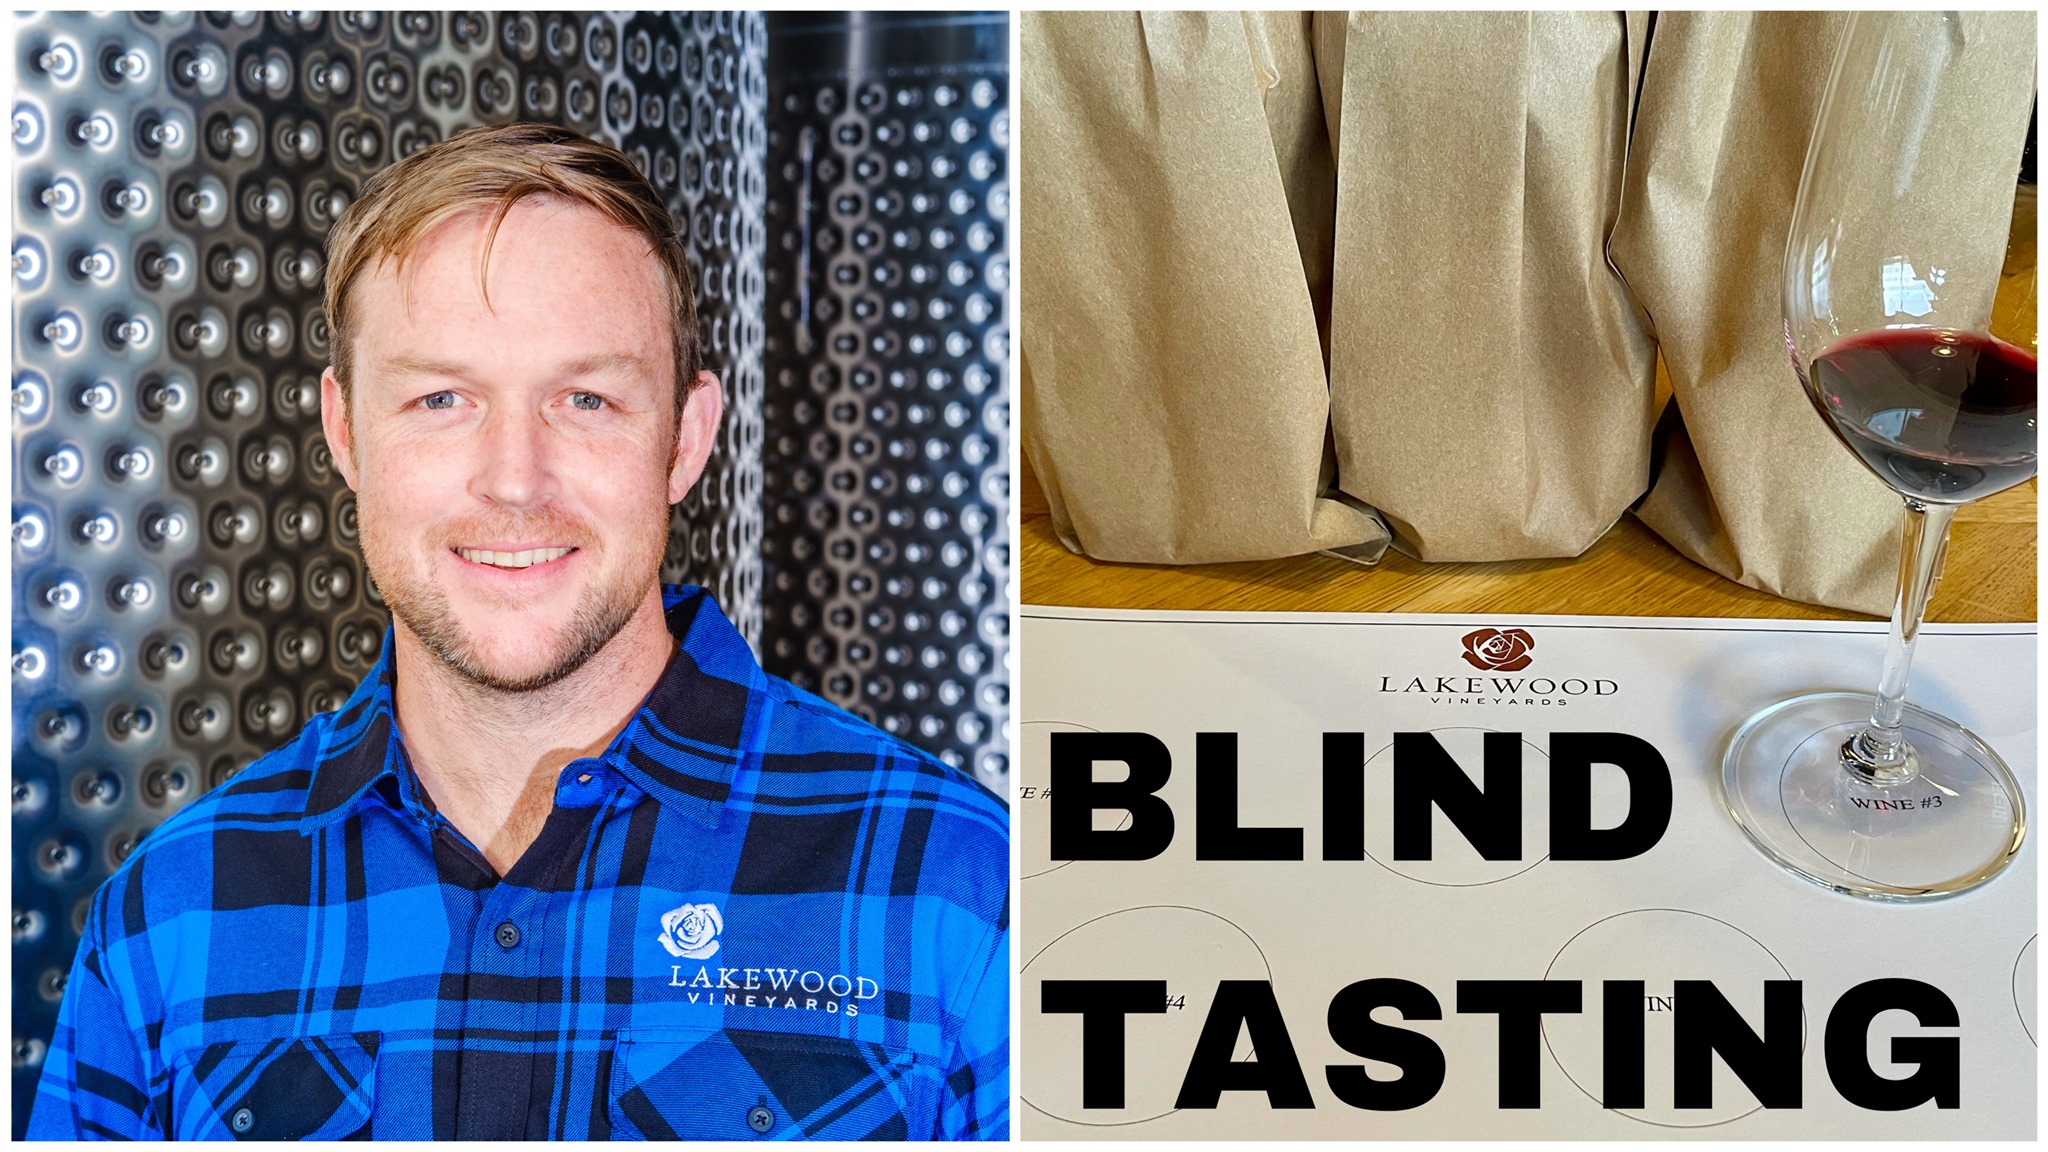 Sommelier Series: Blind Tasting at Lakewood Vineyards